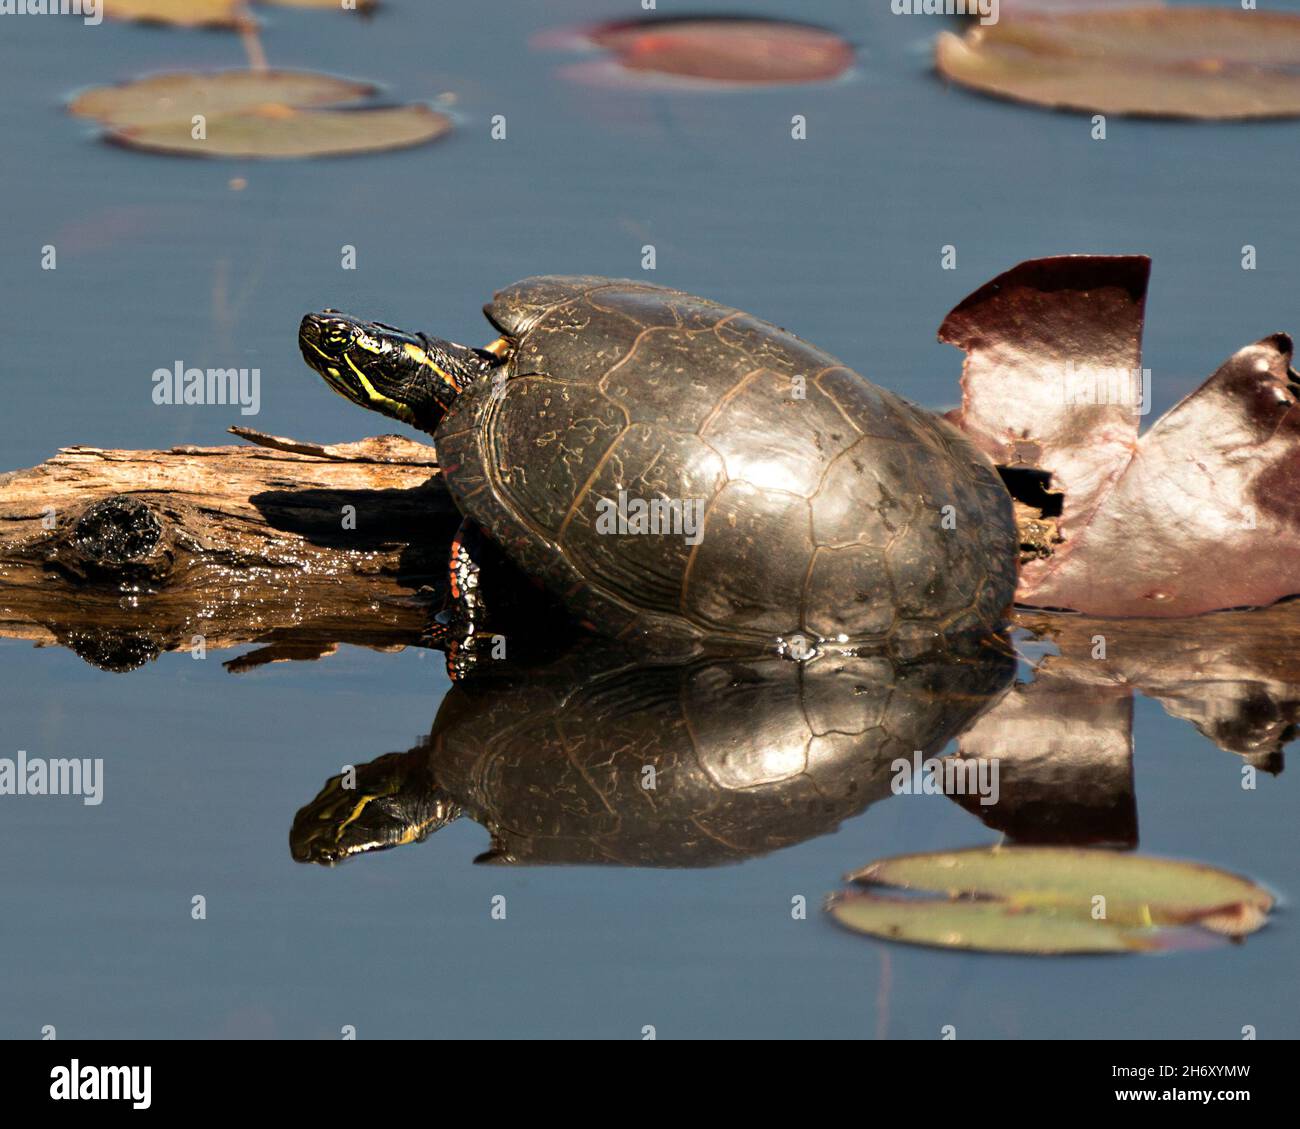 Gemalte Schildkröte auf einem Baumstamm im Teich mit Seerosenunterlage Teich, Seerosen, Moos und zeigt ihre Schildkrötenschale, Kopf, Pfoten in seiner Umgebung und Lebensraum. Stockfoto